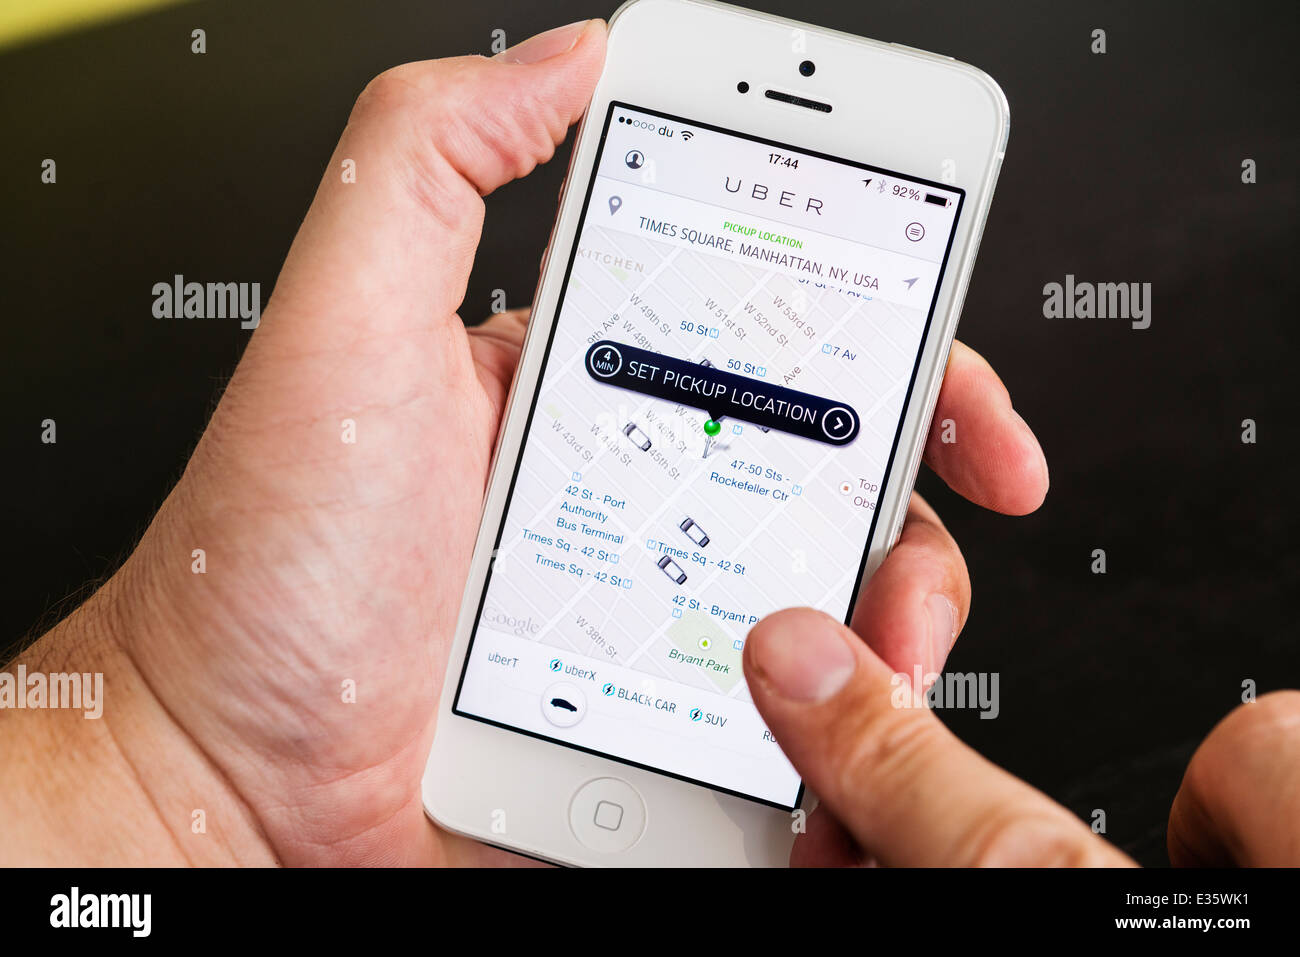 Detalle de Uber Reserva taxi app mostrando puntos de recogida en la Ciudad de Nueva York en el iphone teléfonos inteligentes. Foto de stock